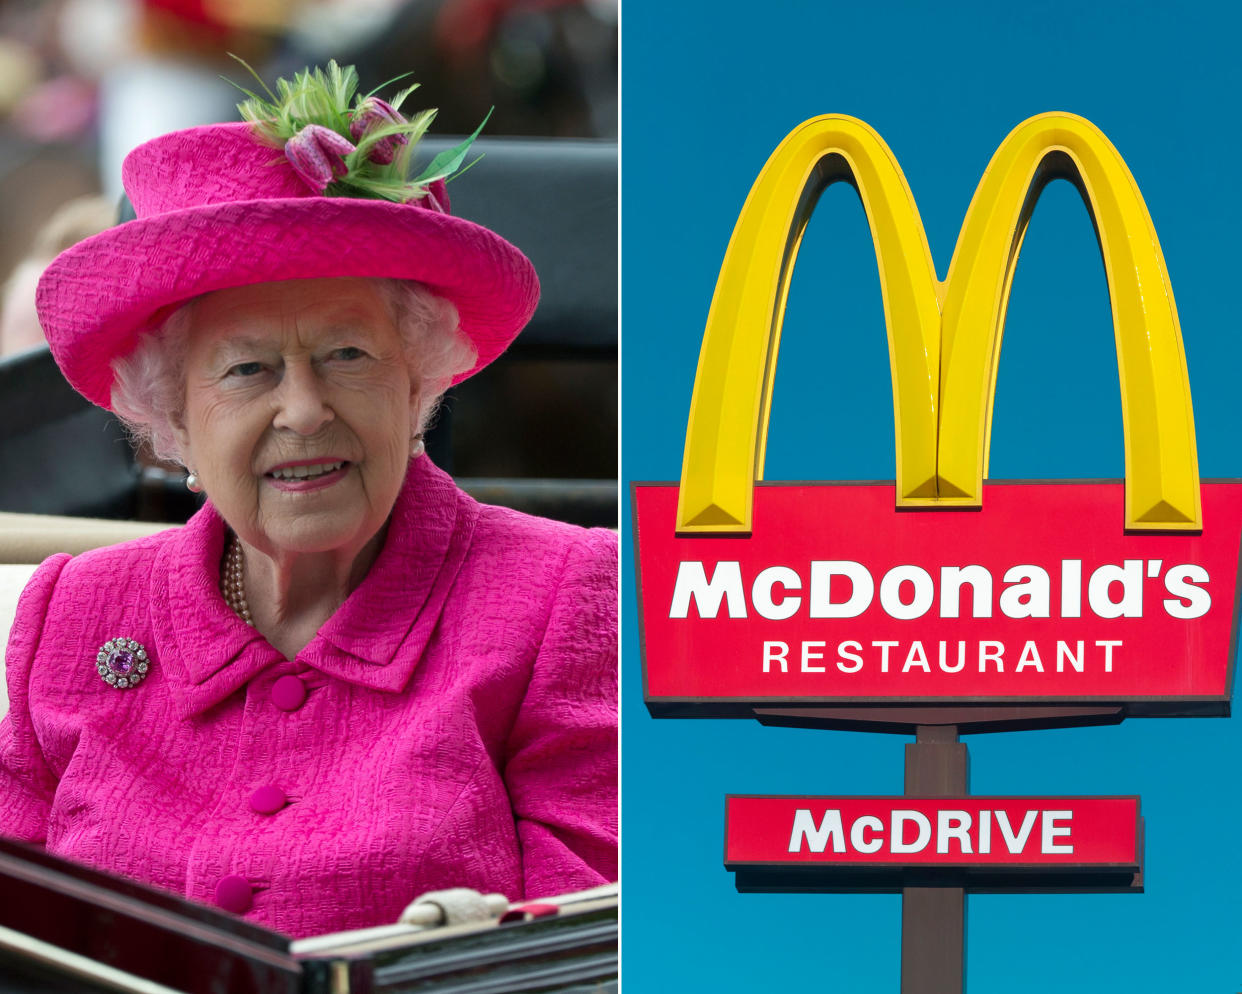 Fast Food und royaler Luxus haben jetzt etwas gemeinsam – eine McDonald’s-Filiale. (Bild: ddp Images / AP Photo)